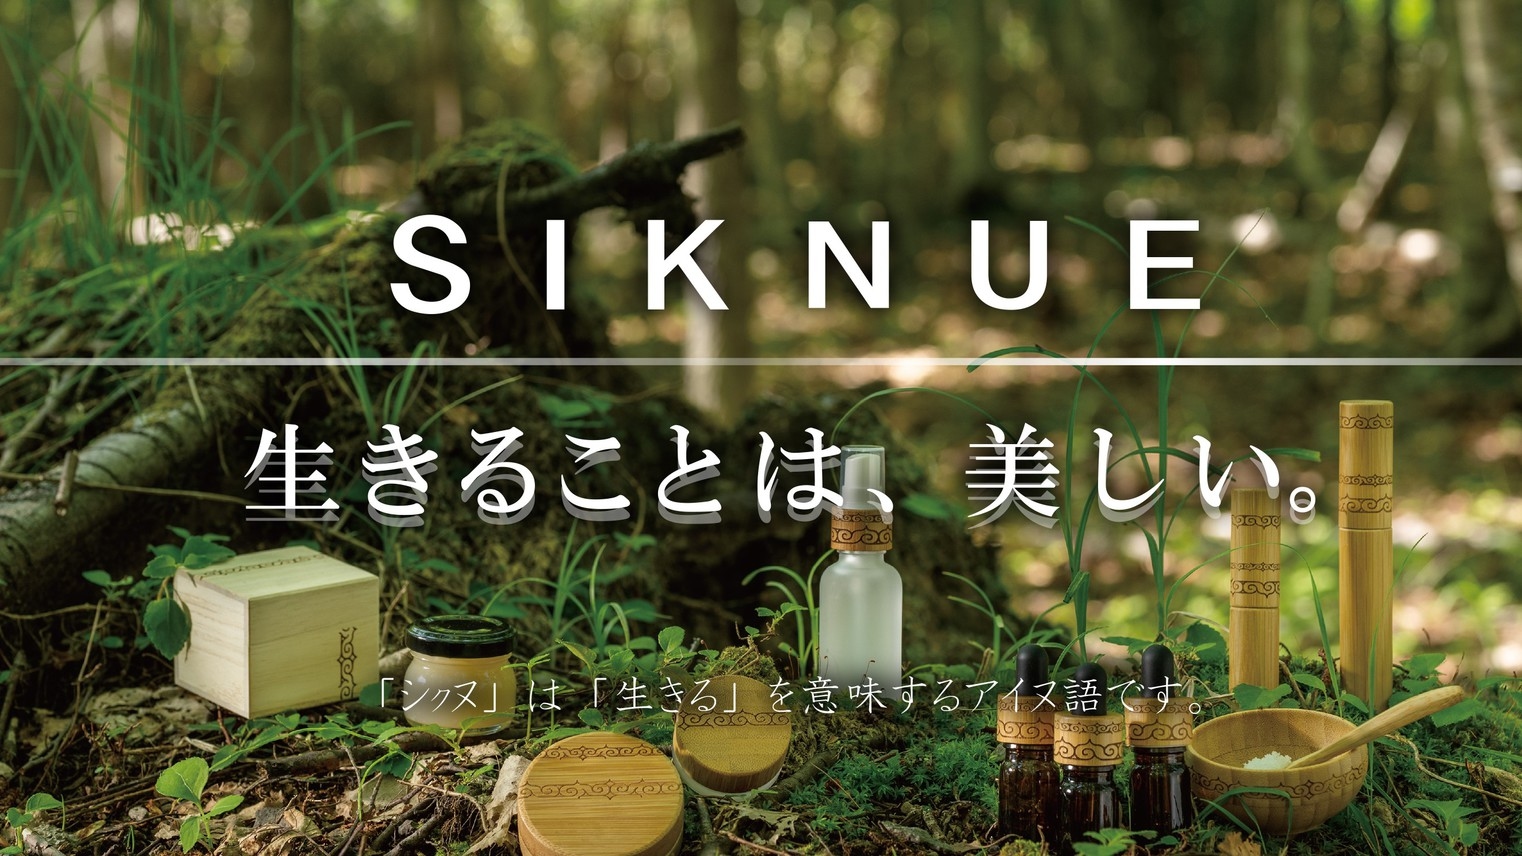 【北海道旅行の記念に♪】北海道天然原料使用のブランド「SIKNUE」スキンケアセット付／朝食なし